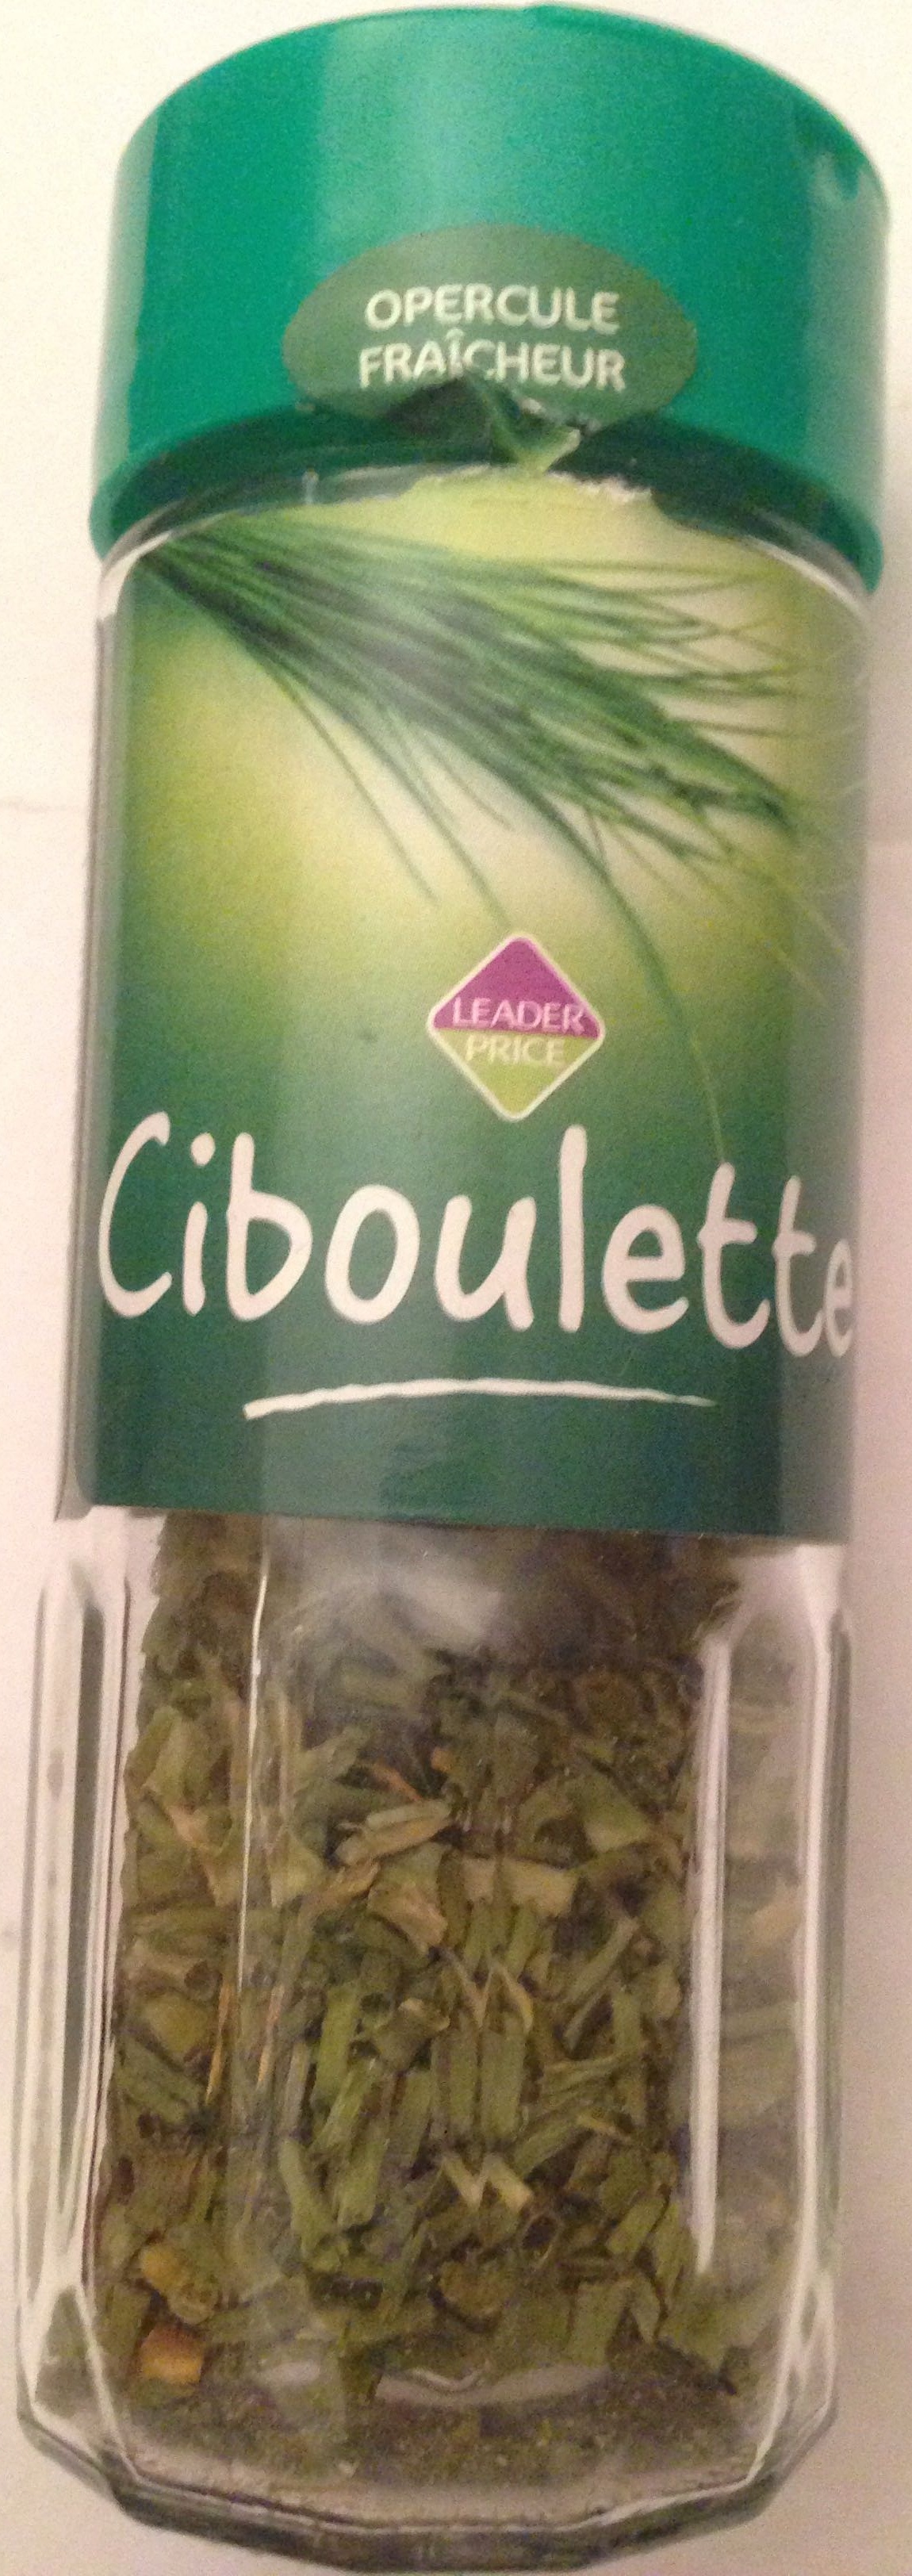 Ciboulette - Product - fr